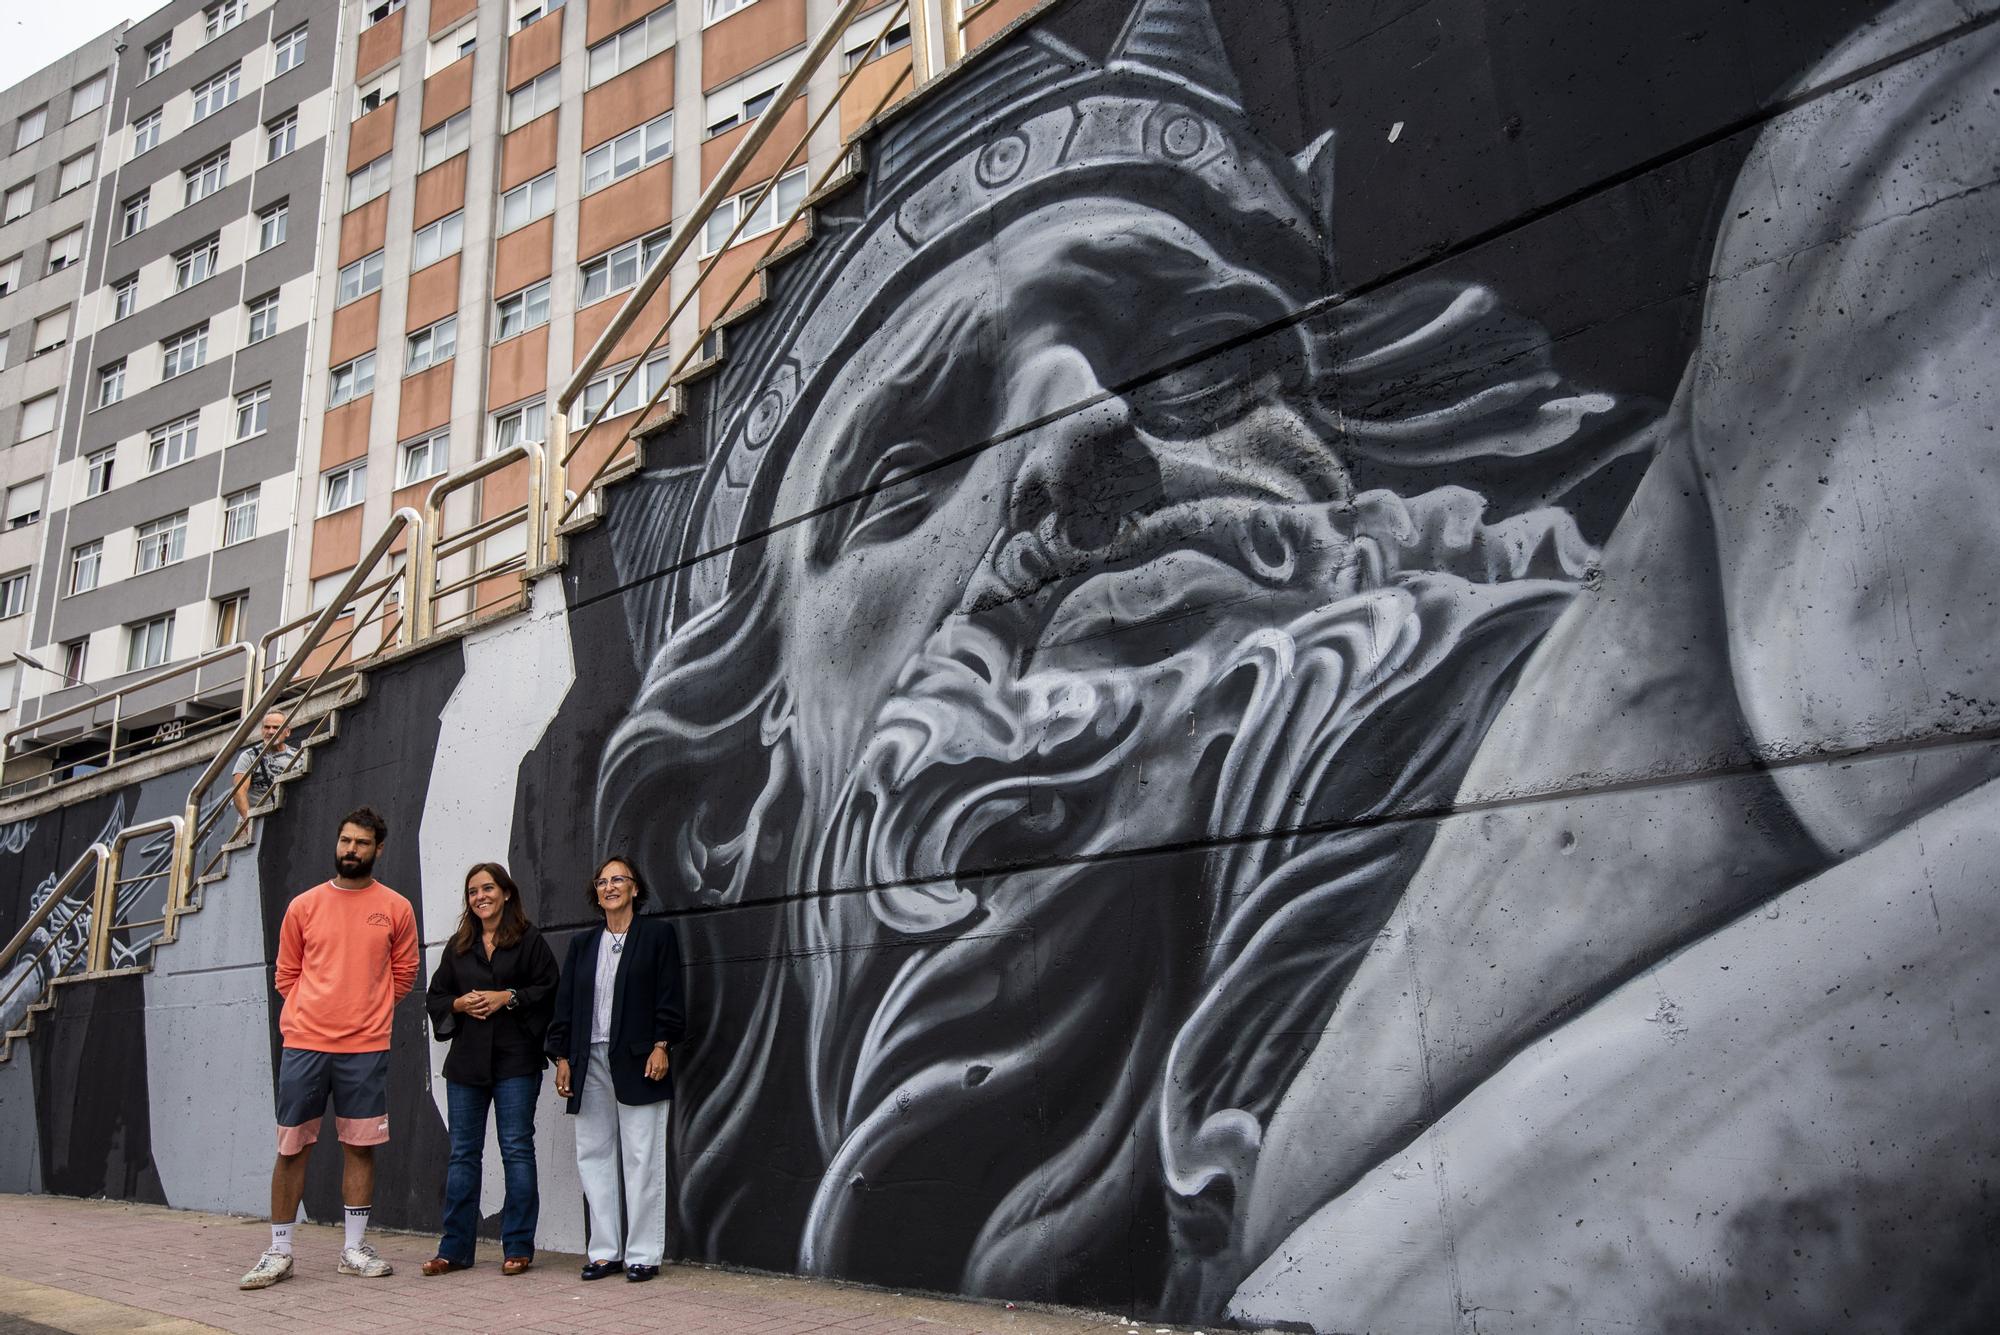 Un obra titánica en A Coruña del mejor muralista del mundo frente a una ensenada eterna